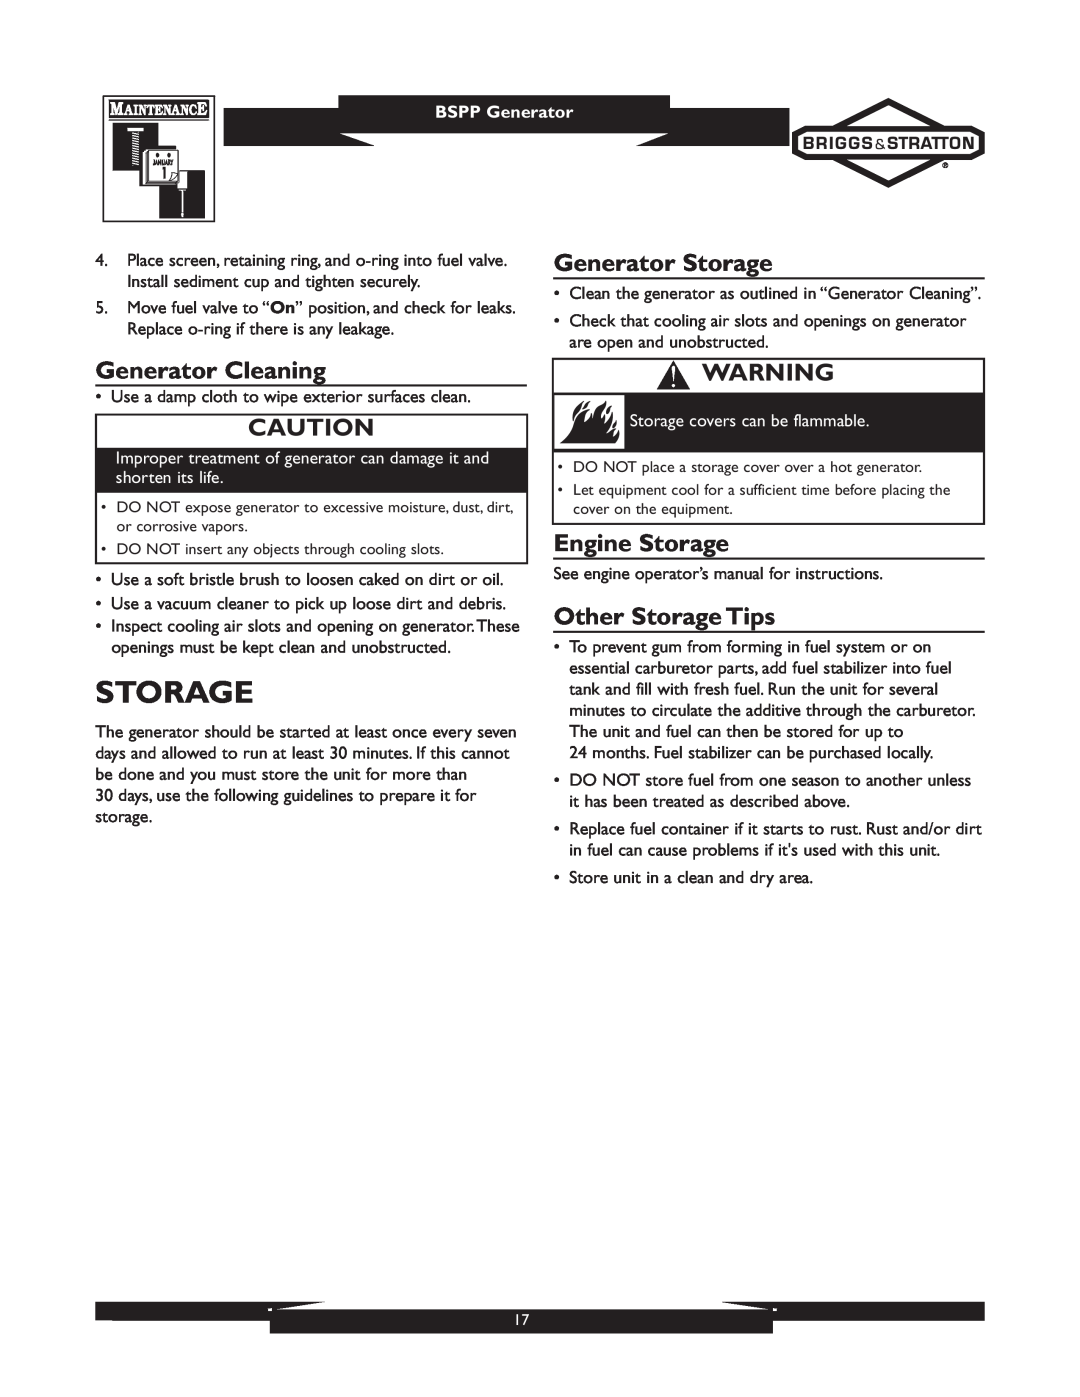 Briggs & Stratton 01933-1 Generator Storage, Generator Cleaning, Engine Storage, Other Storage Tips, BSPP Generator 